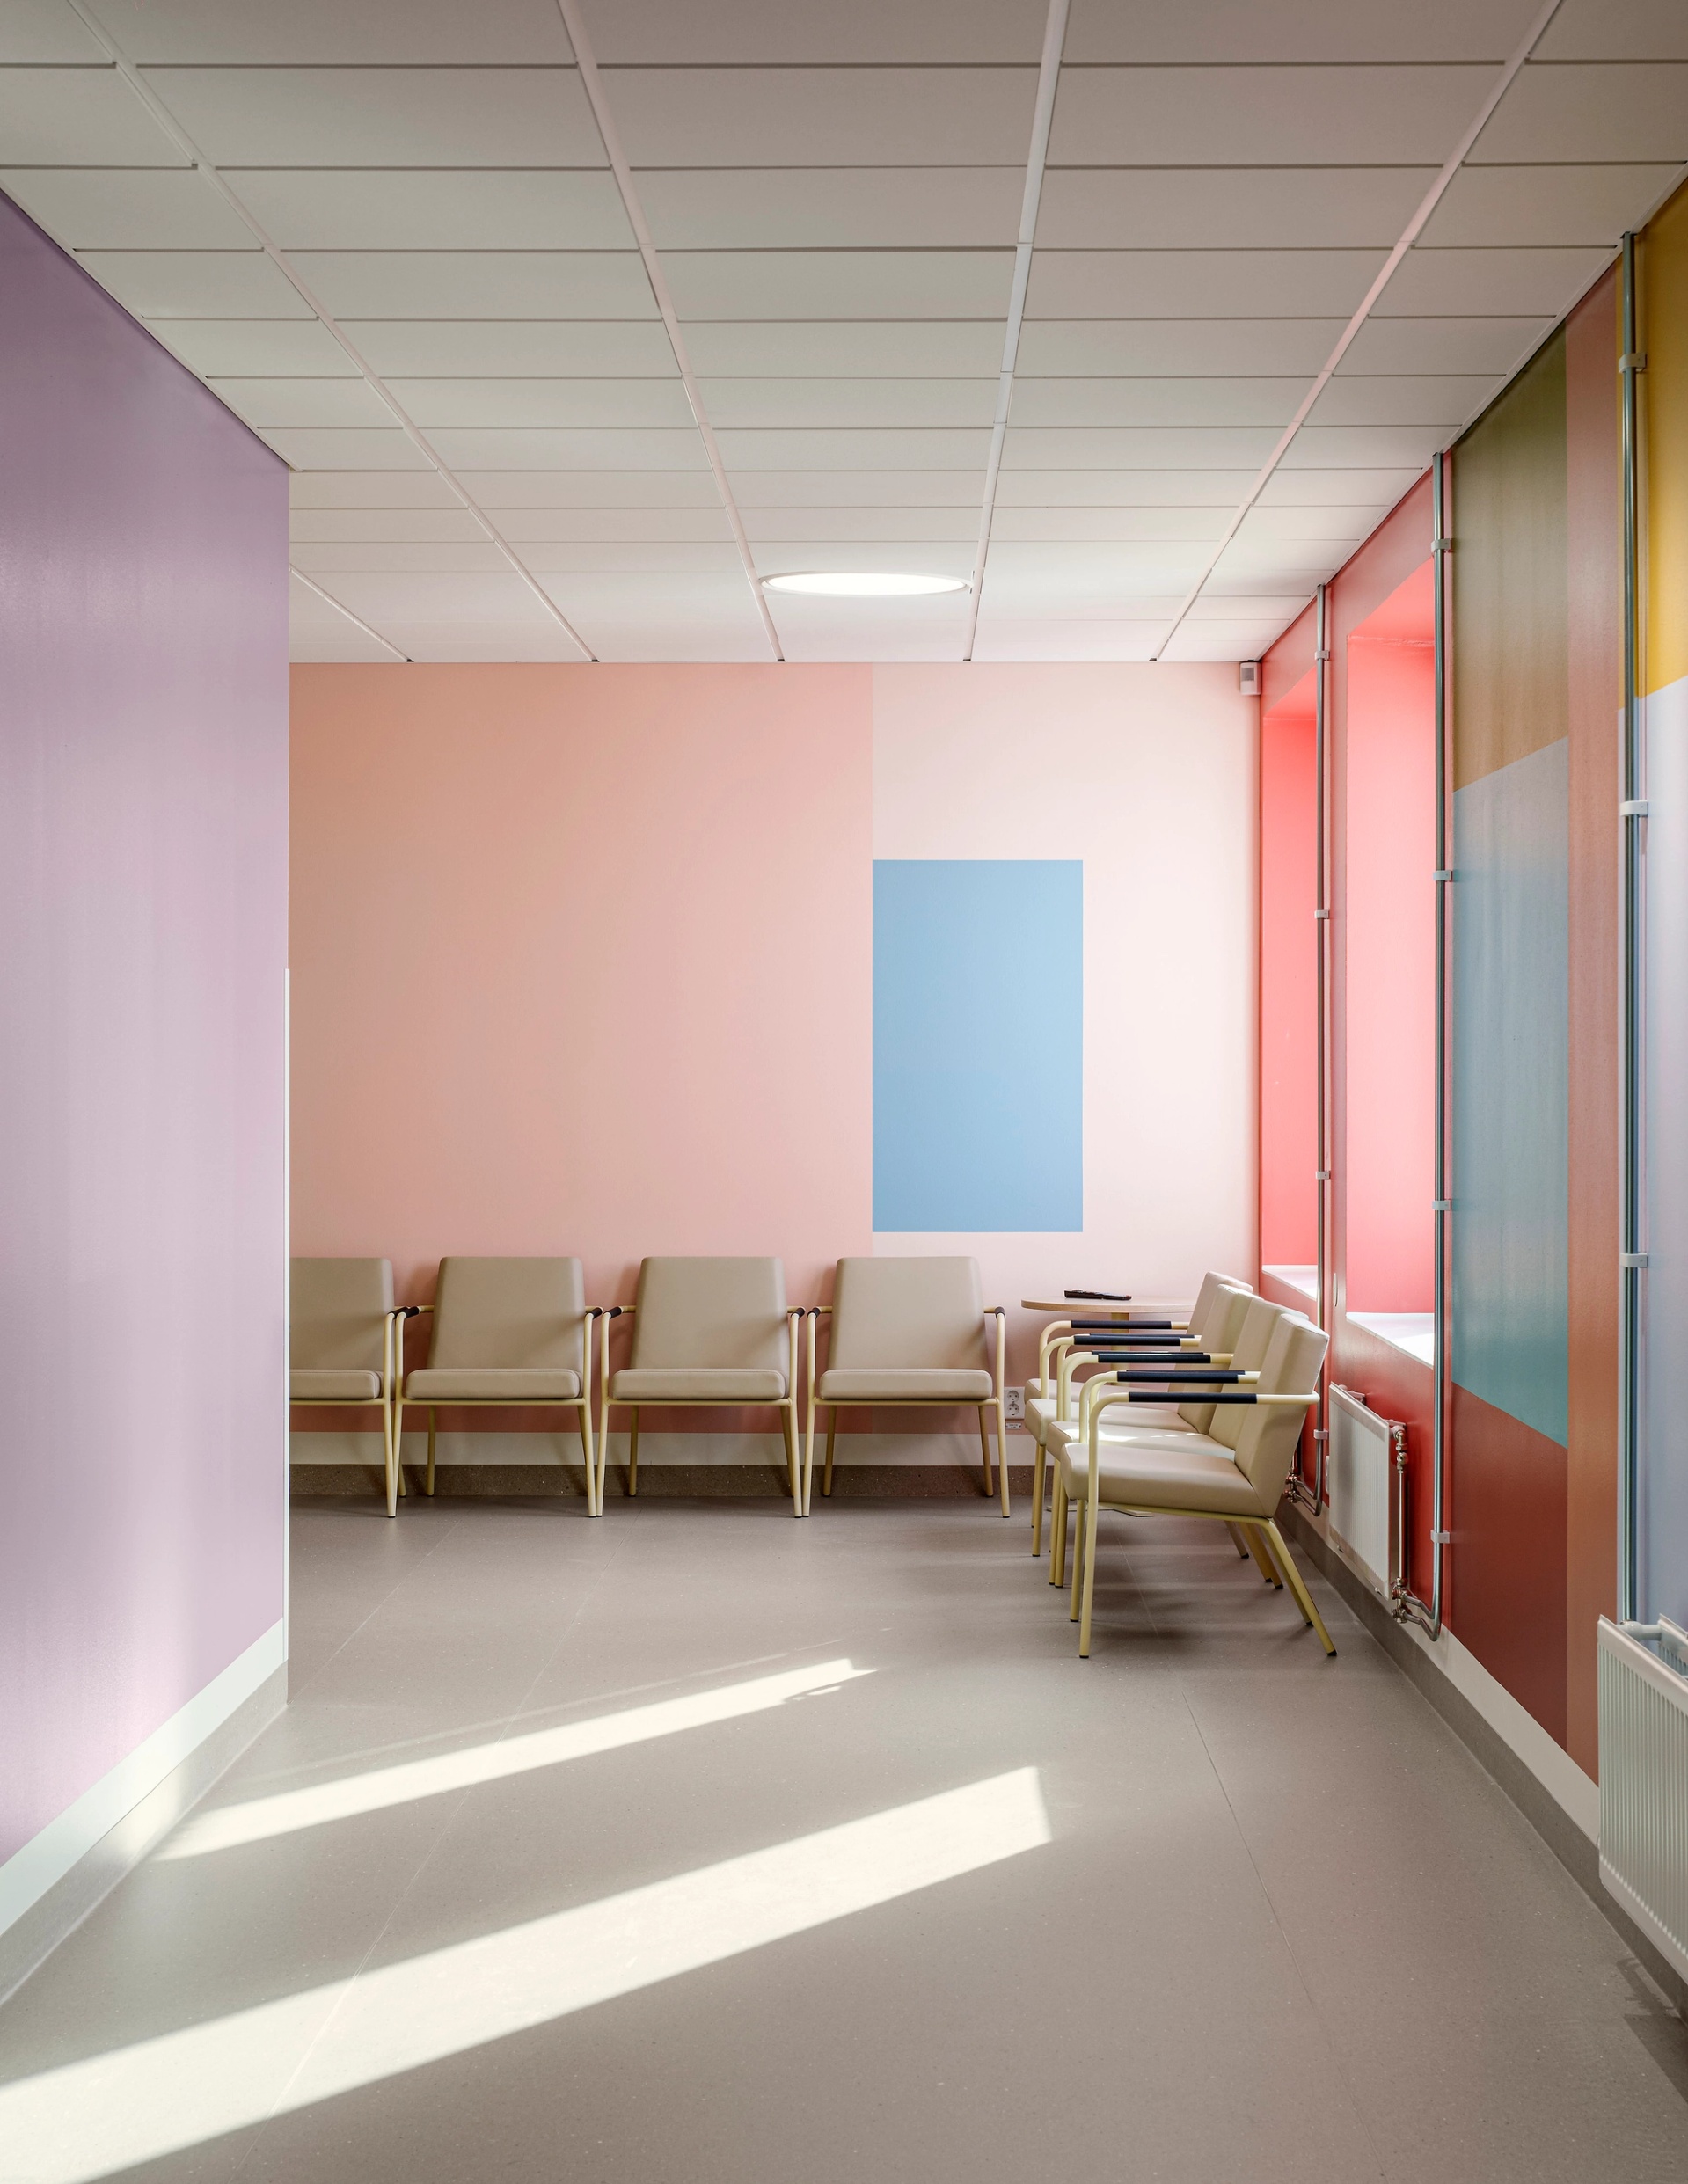 Nya Psykiatrisjukhuset i Kalmar interiör korridor med ljus färgsättning